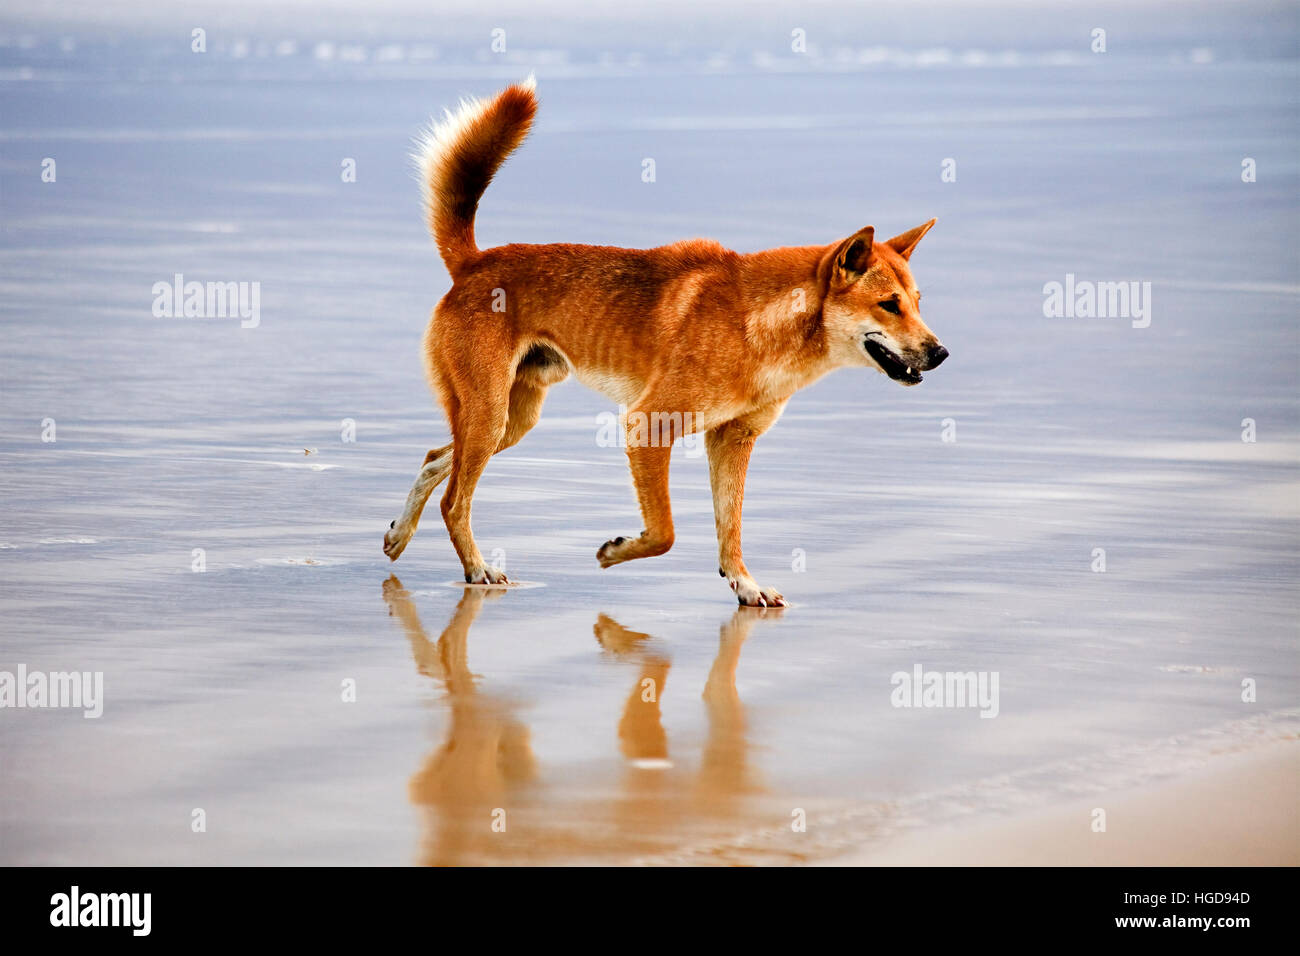 Loup solitaire de couleur brun dingo - dieu sur plage de sable isolée dans le parc national du Queensland Australie - Fraser island. Sauvage et libre austral indigènes Banque D'Images